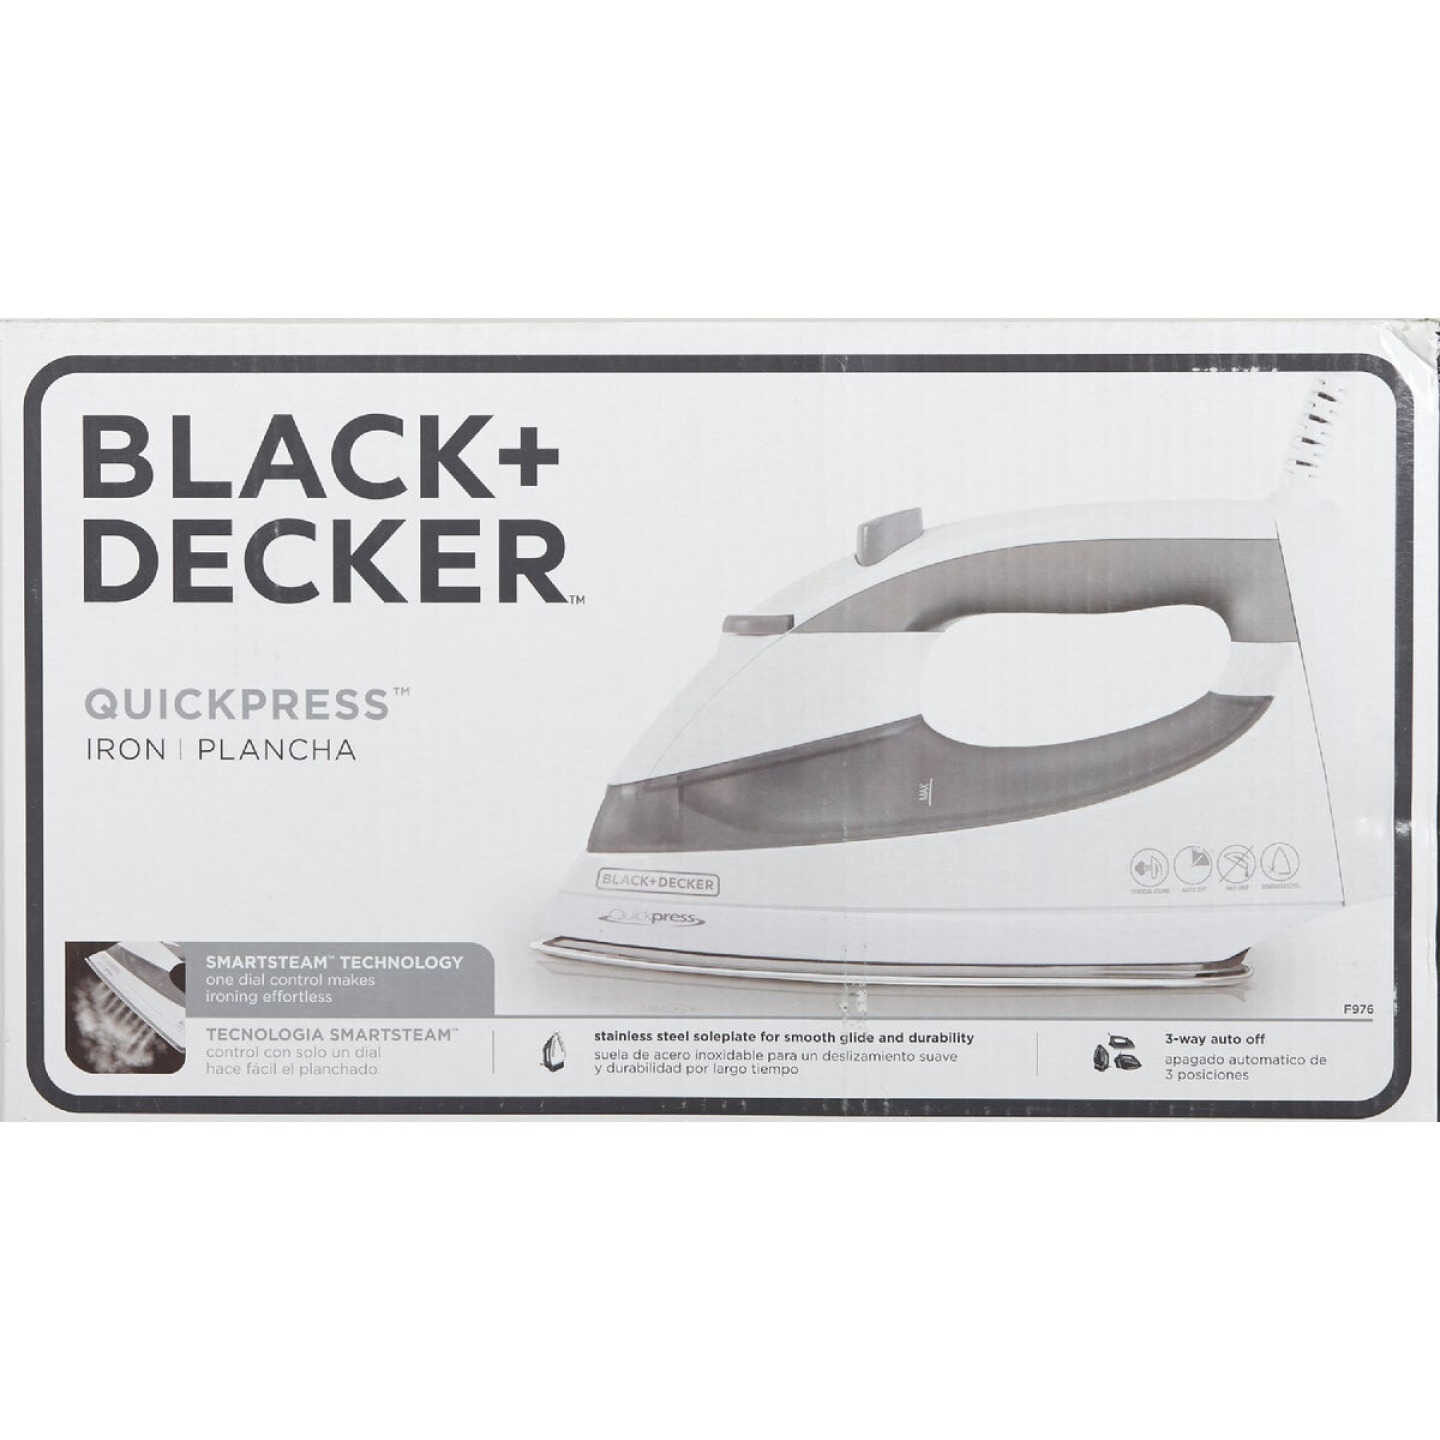 BLACK+DECKER 2-in-1 Steamer Iron